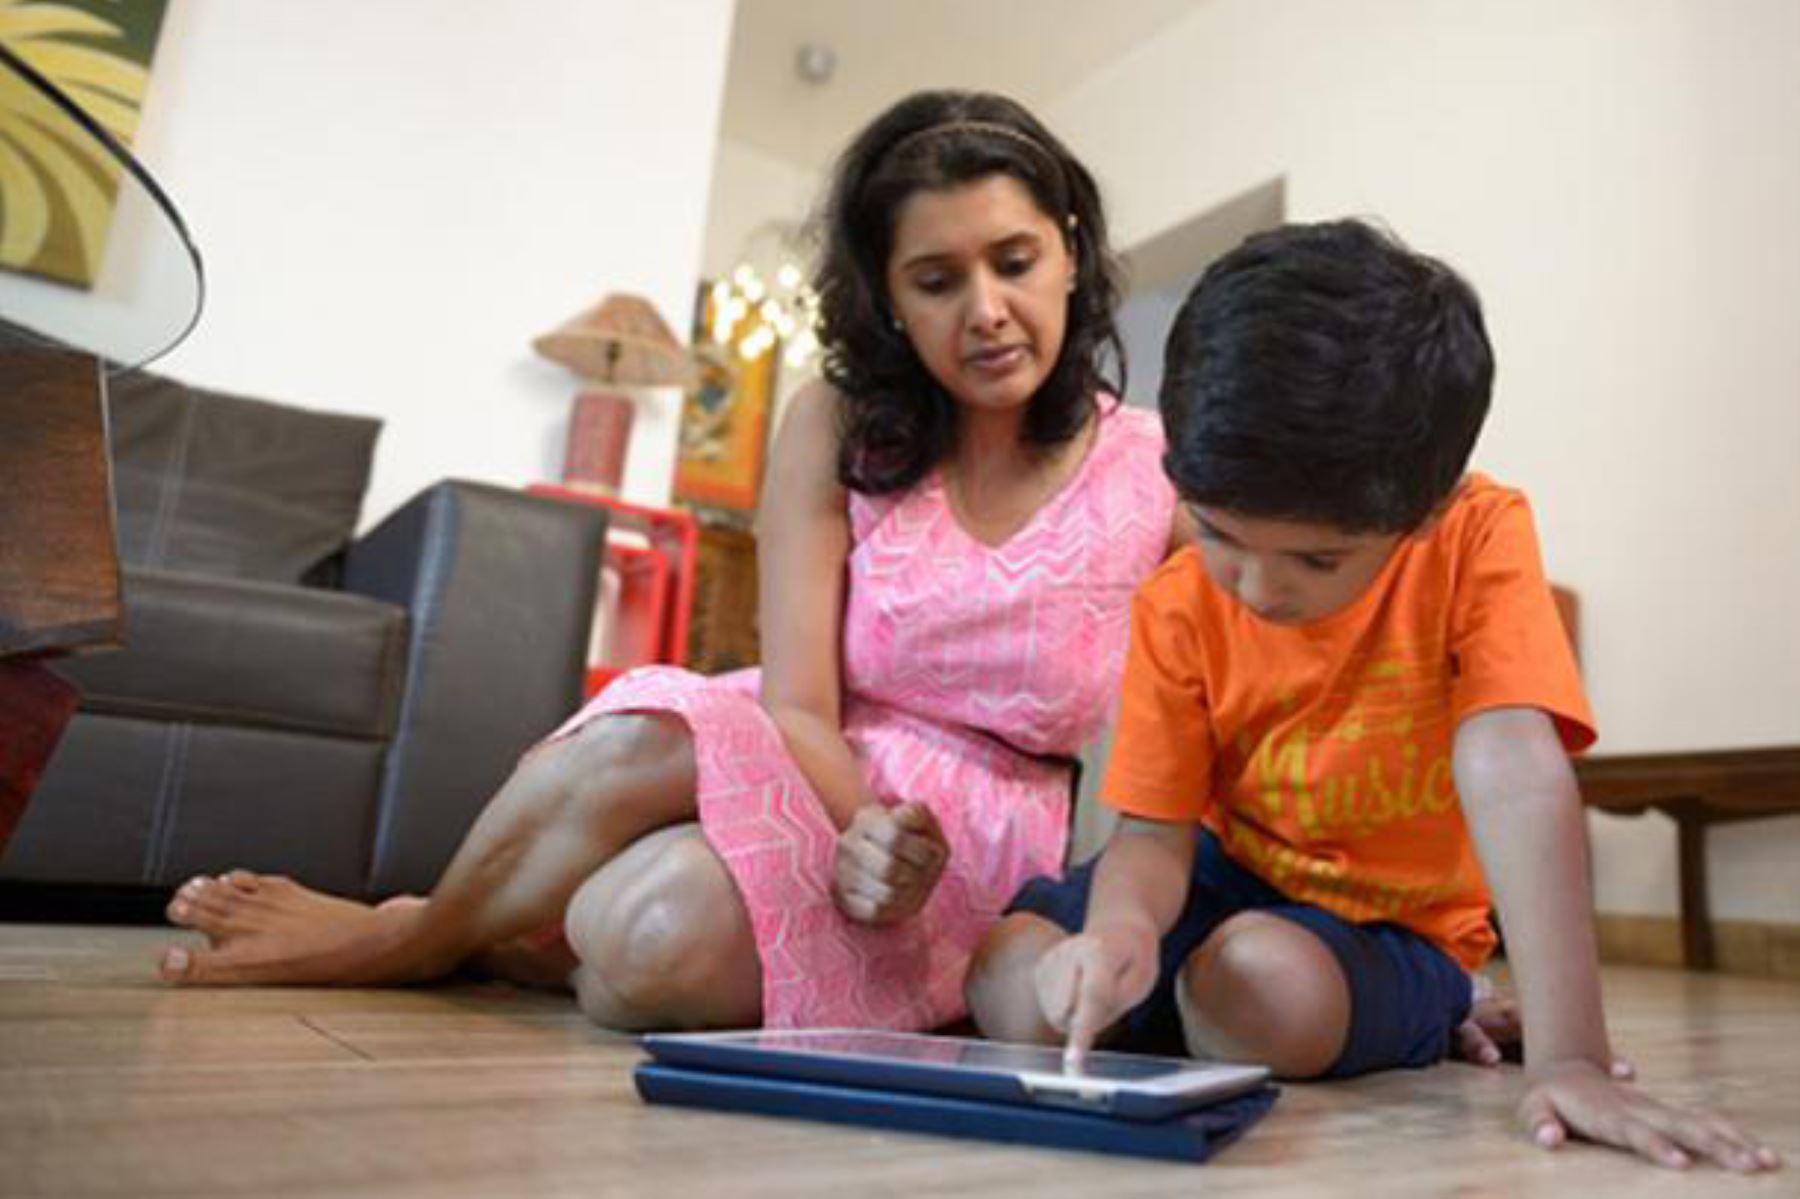 Educared plataforma digital para la enseñanza propone diversos programas para aprender en casa. ANDINA/Difusión